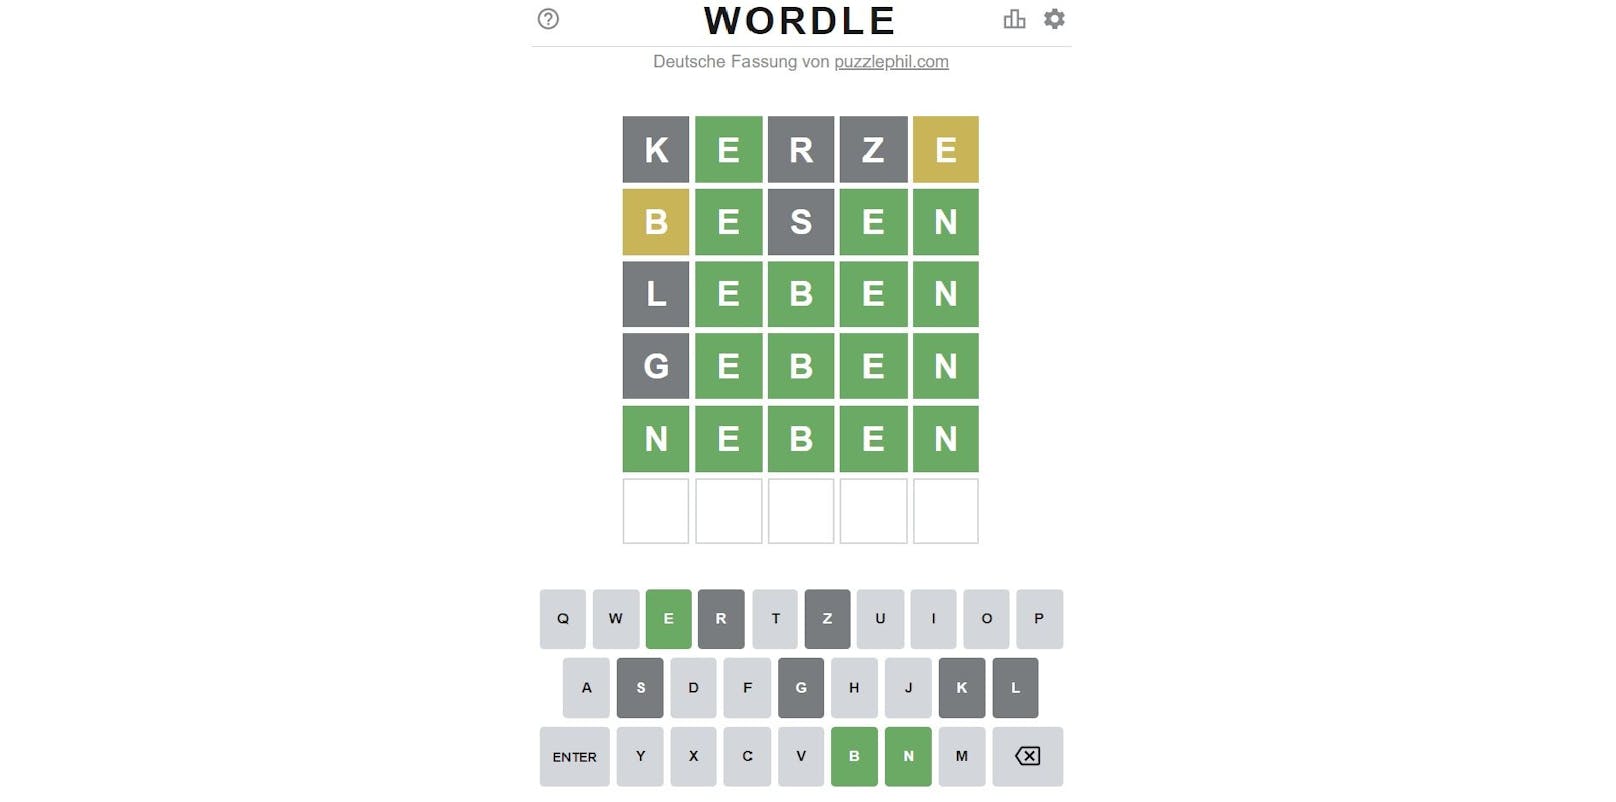 Das beliebte Game "Wordle" kann man nun auch mit deutschen Wörtern spielen.